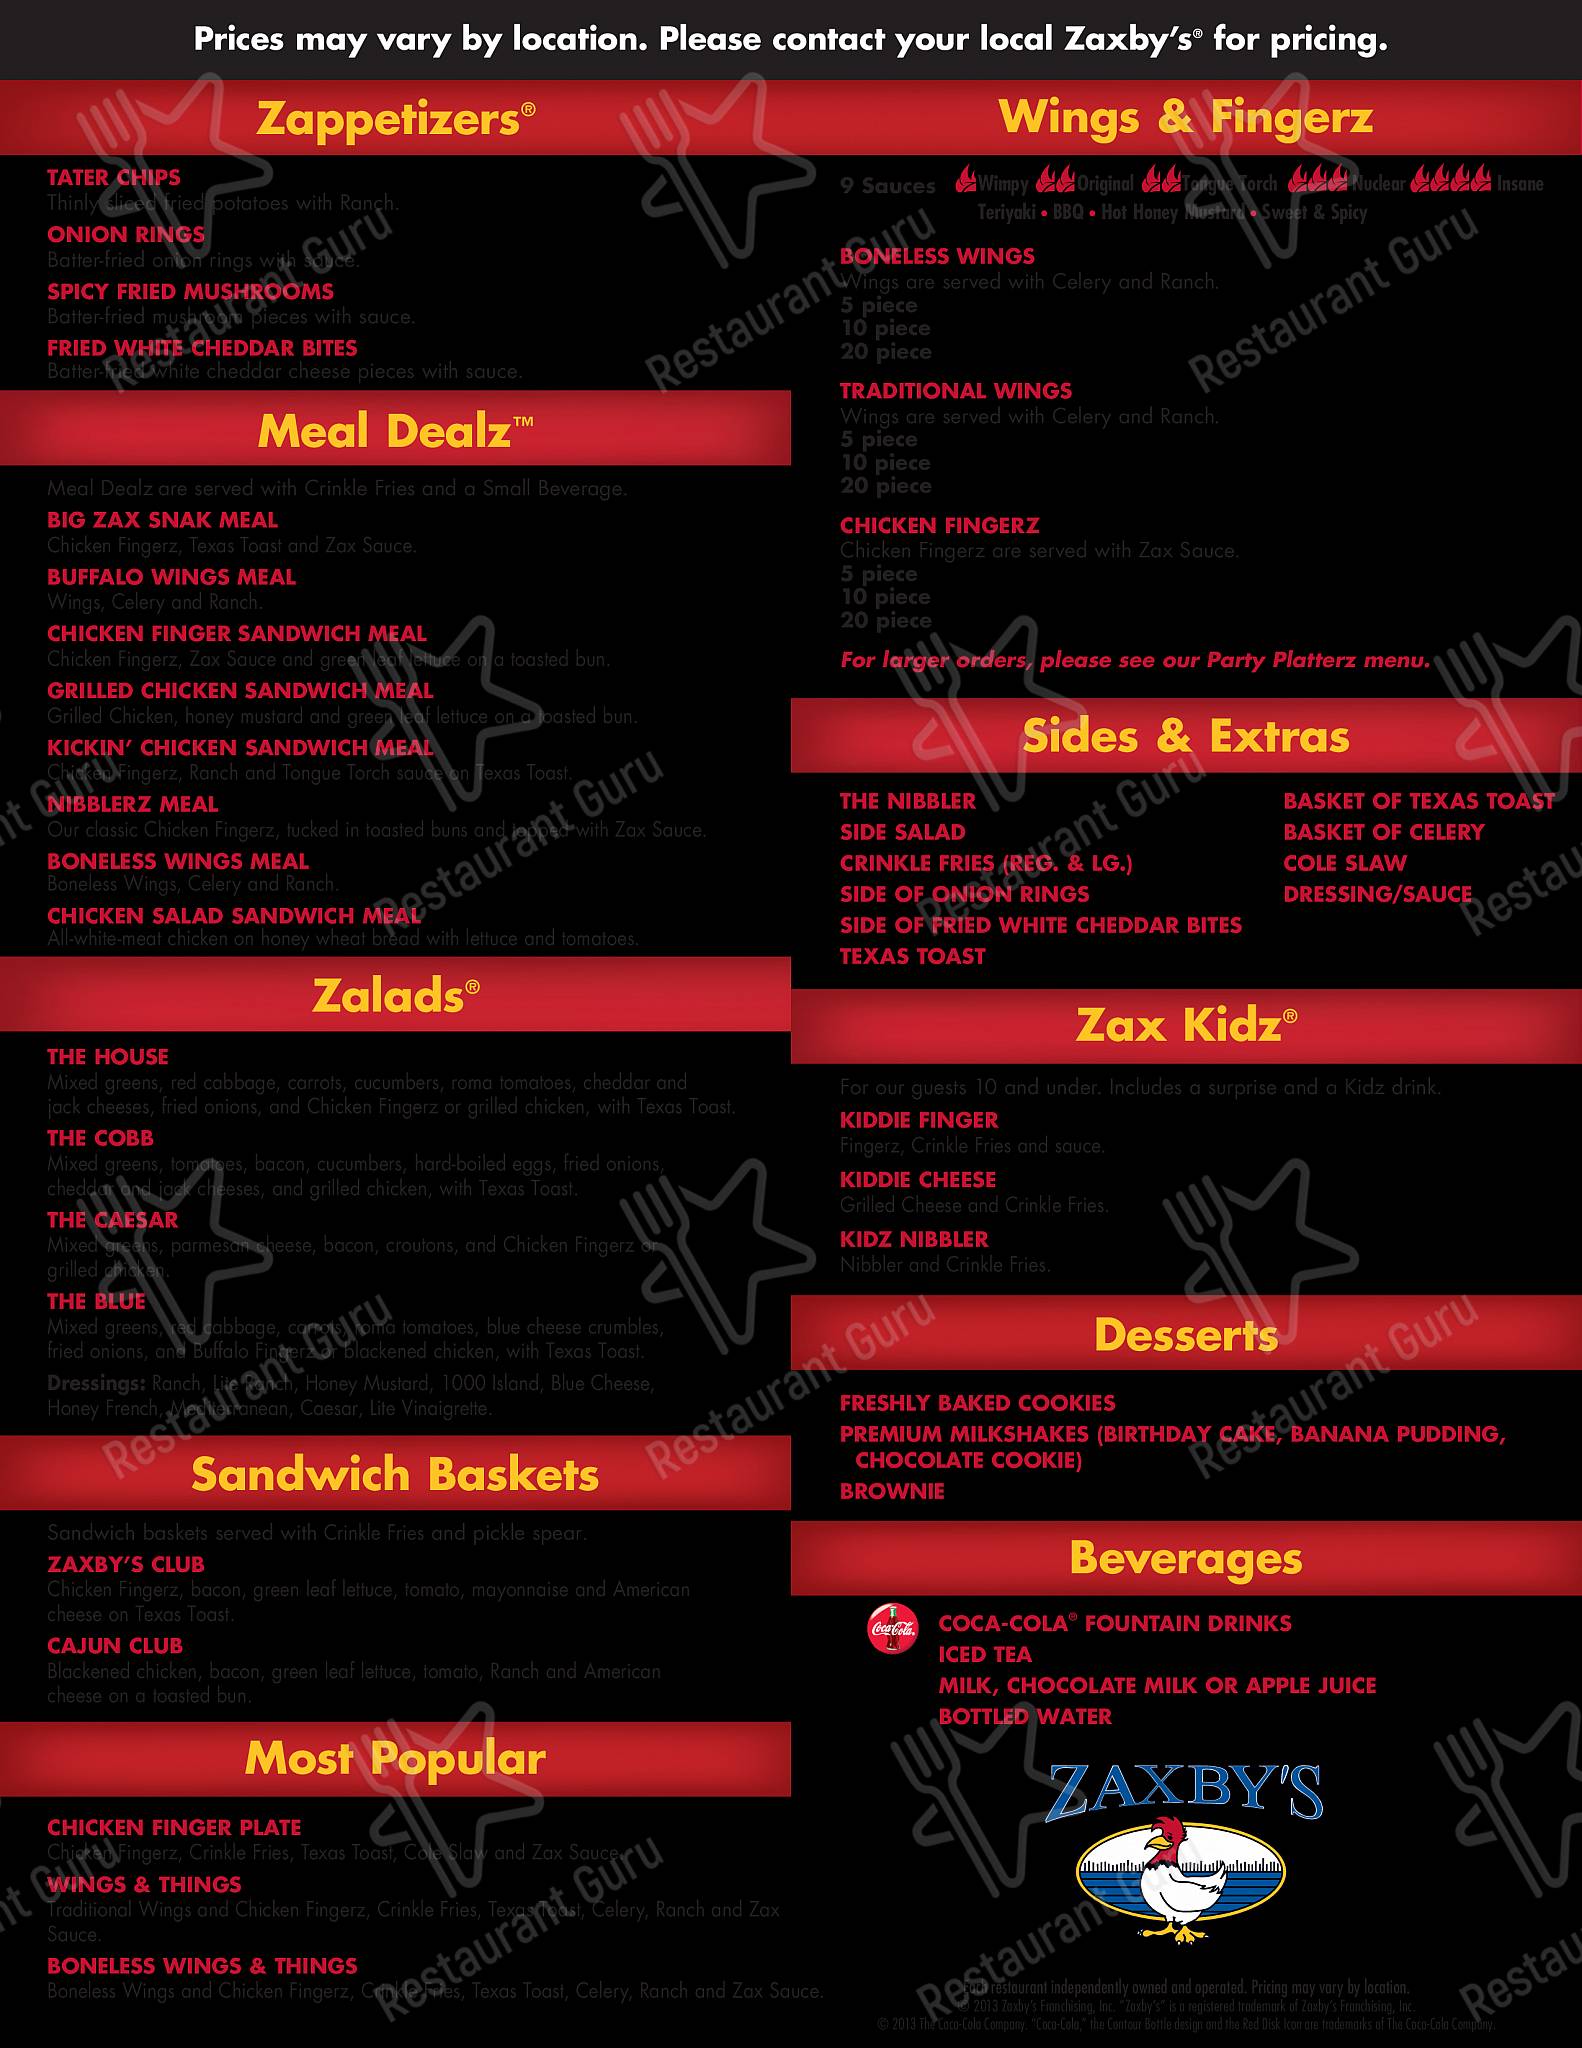 Zaxby's Chicken Fingers & Buffalo Wings menu